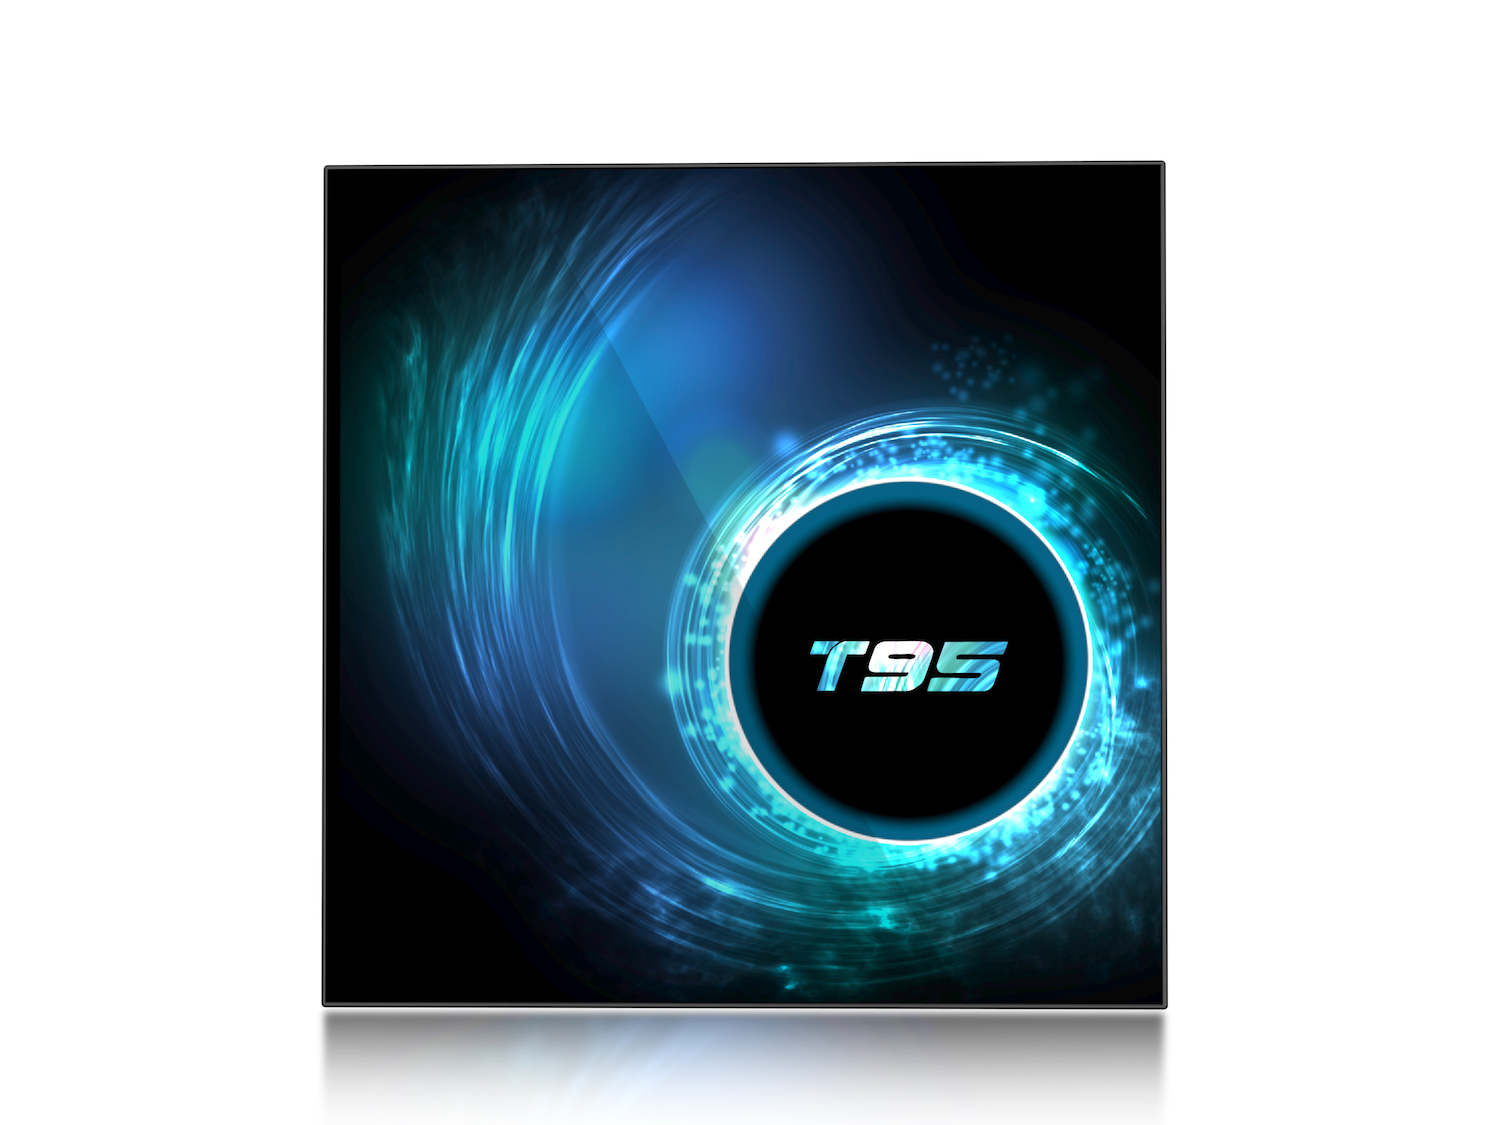 Tivi box T95 hệ điều hành Android 10 RAM 4GB  ROM 32GB  cài sẵn bộ ứng dụng giải trí miễn phí